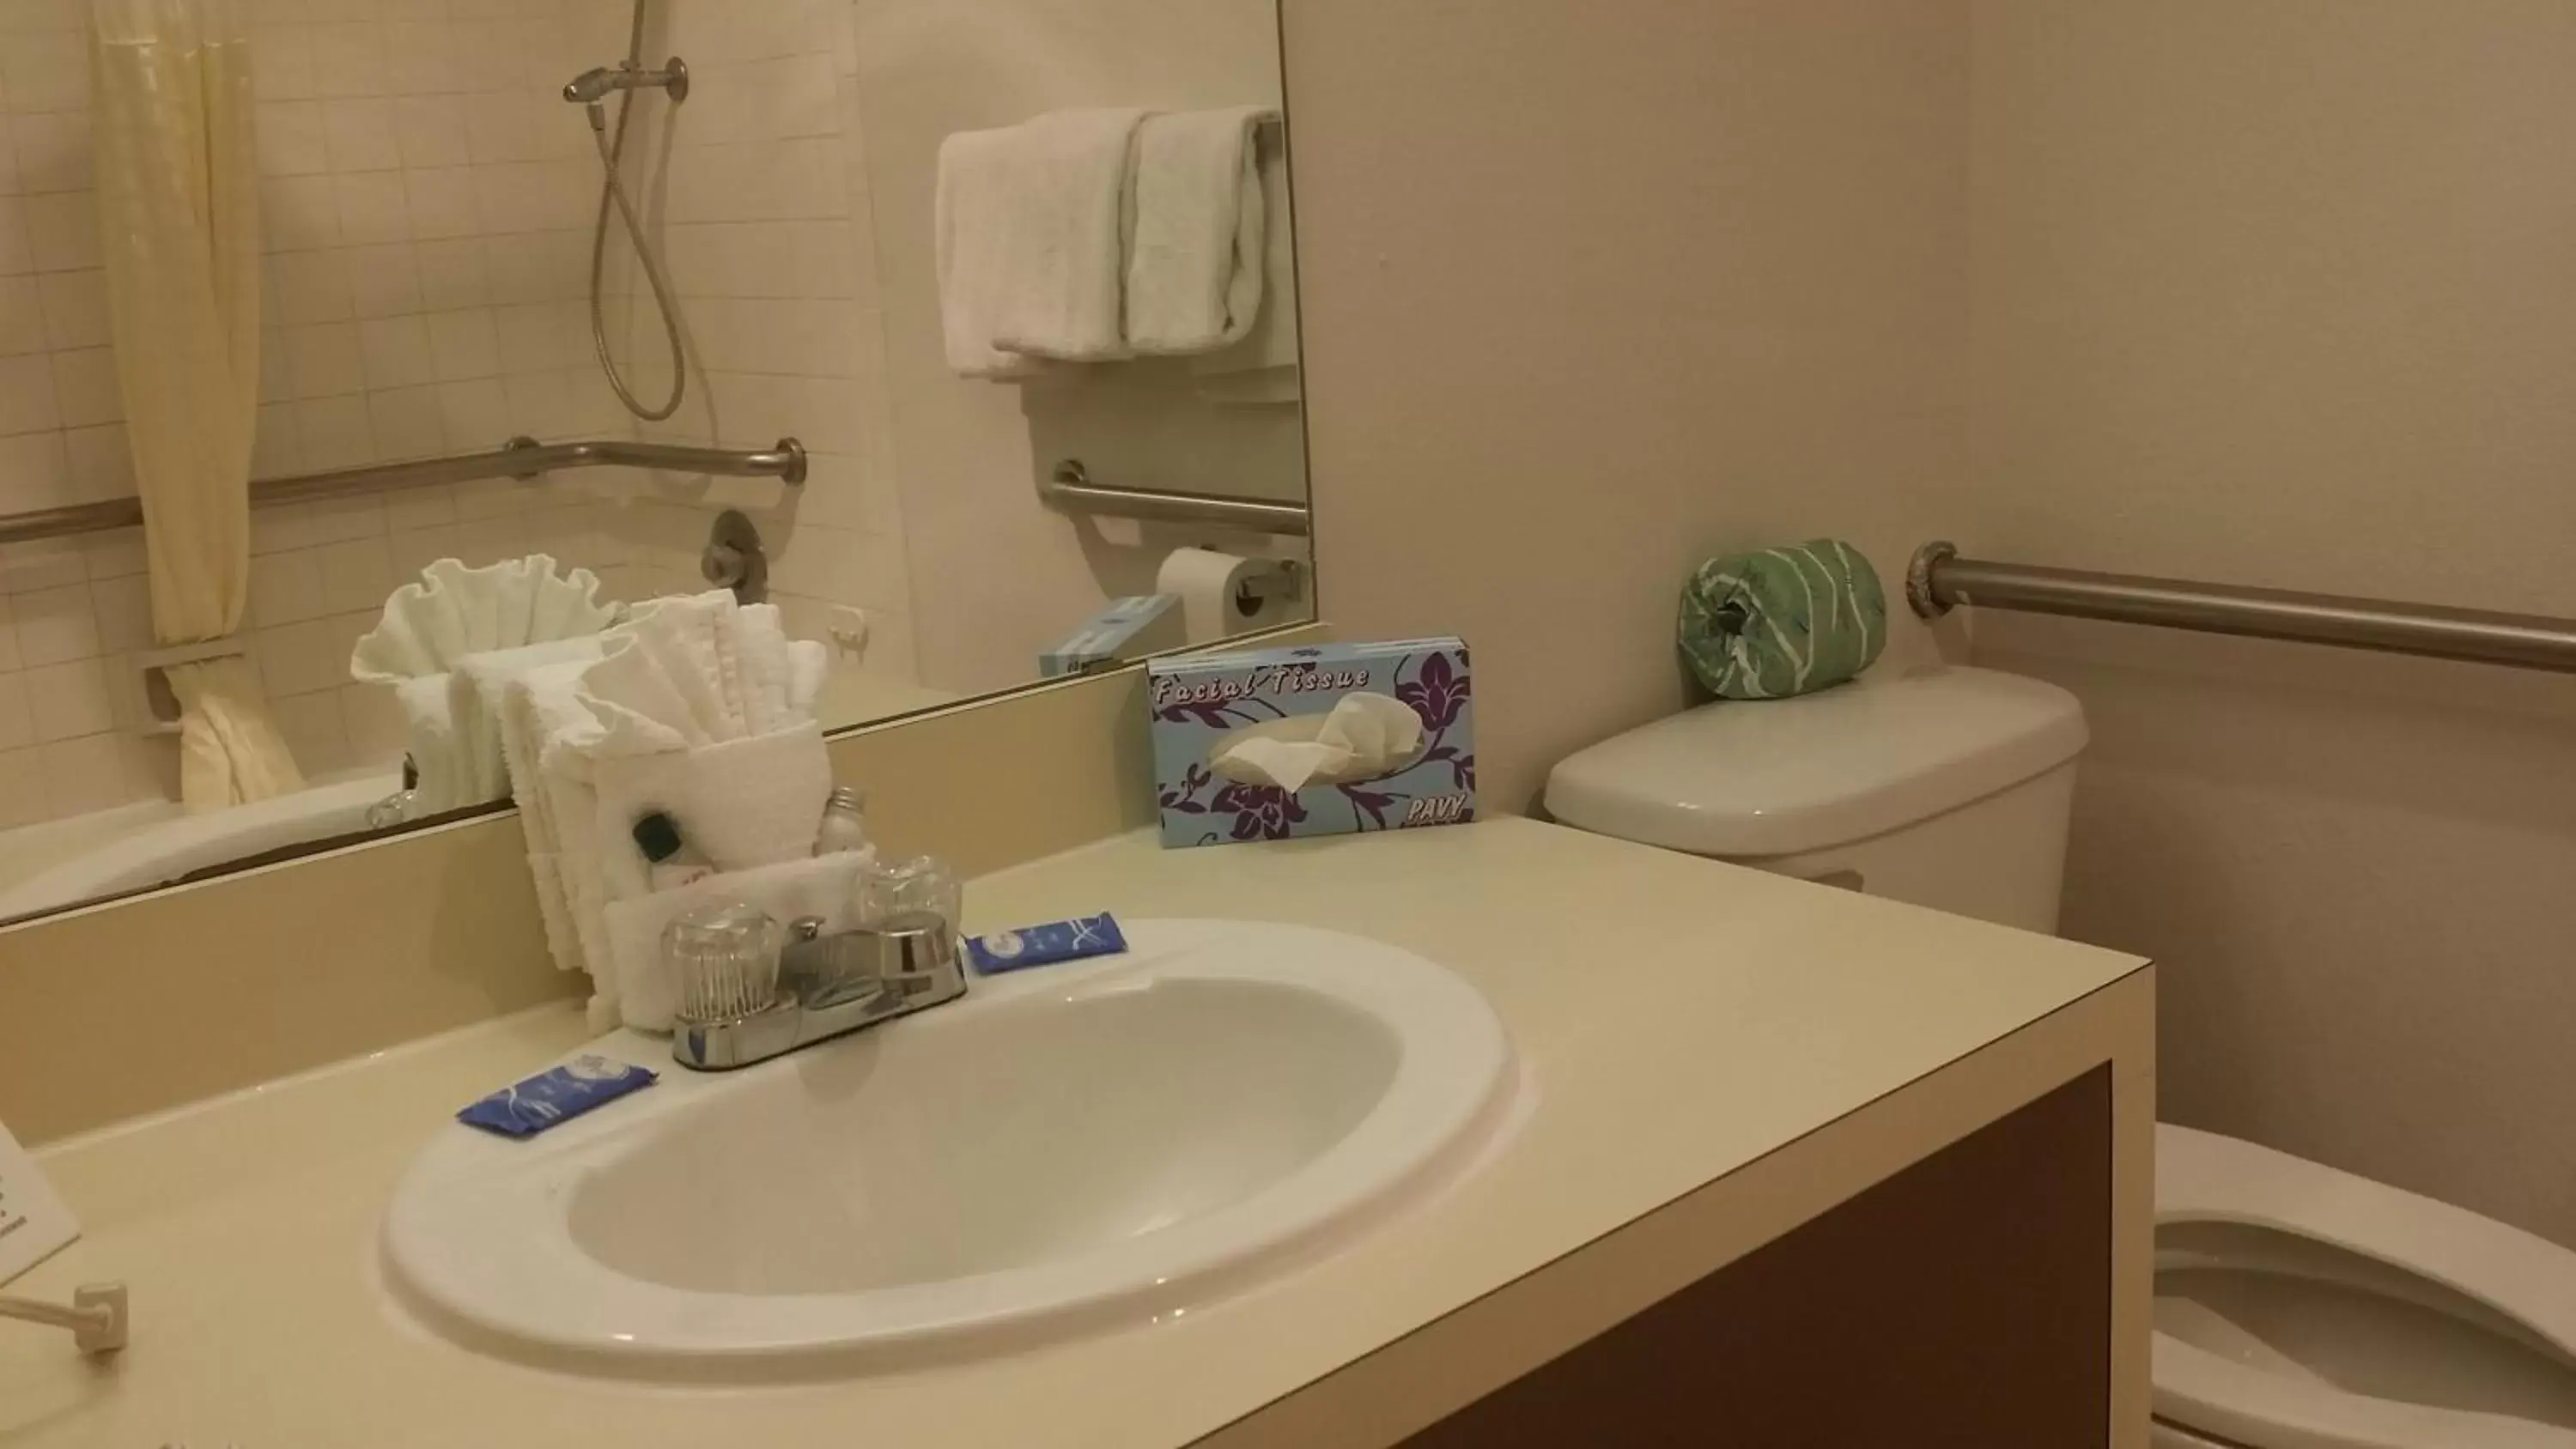 Toilet, Bathroom in Guest House Inn Medical District near Texas Tech Univ